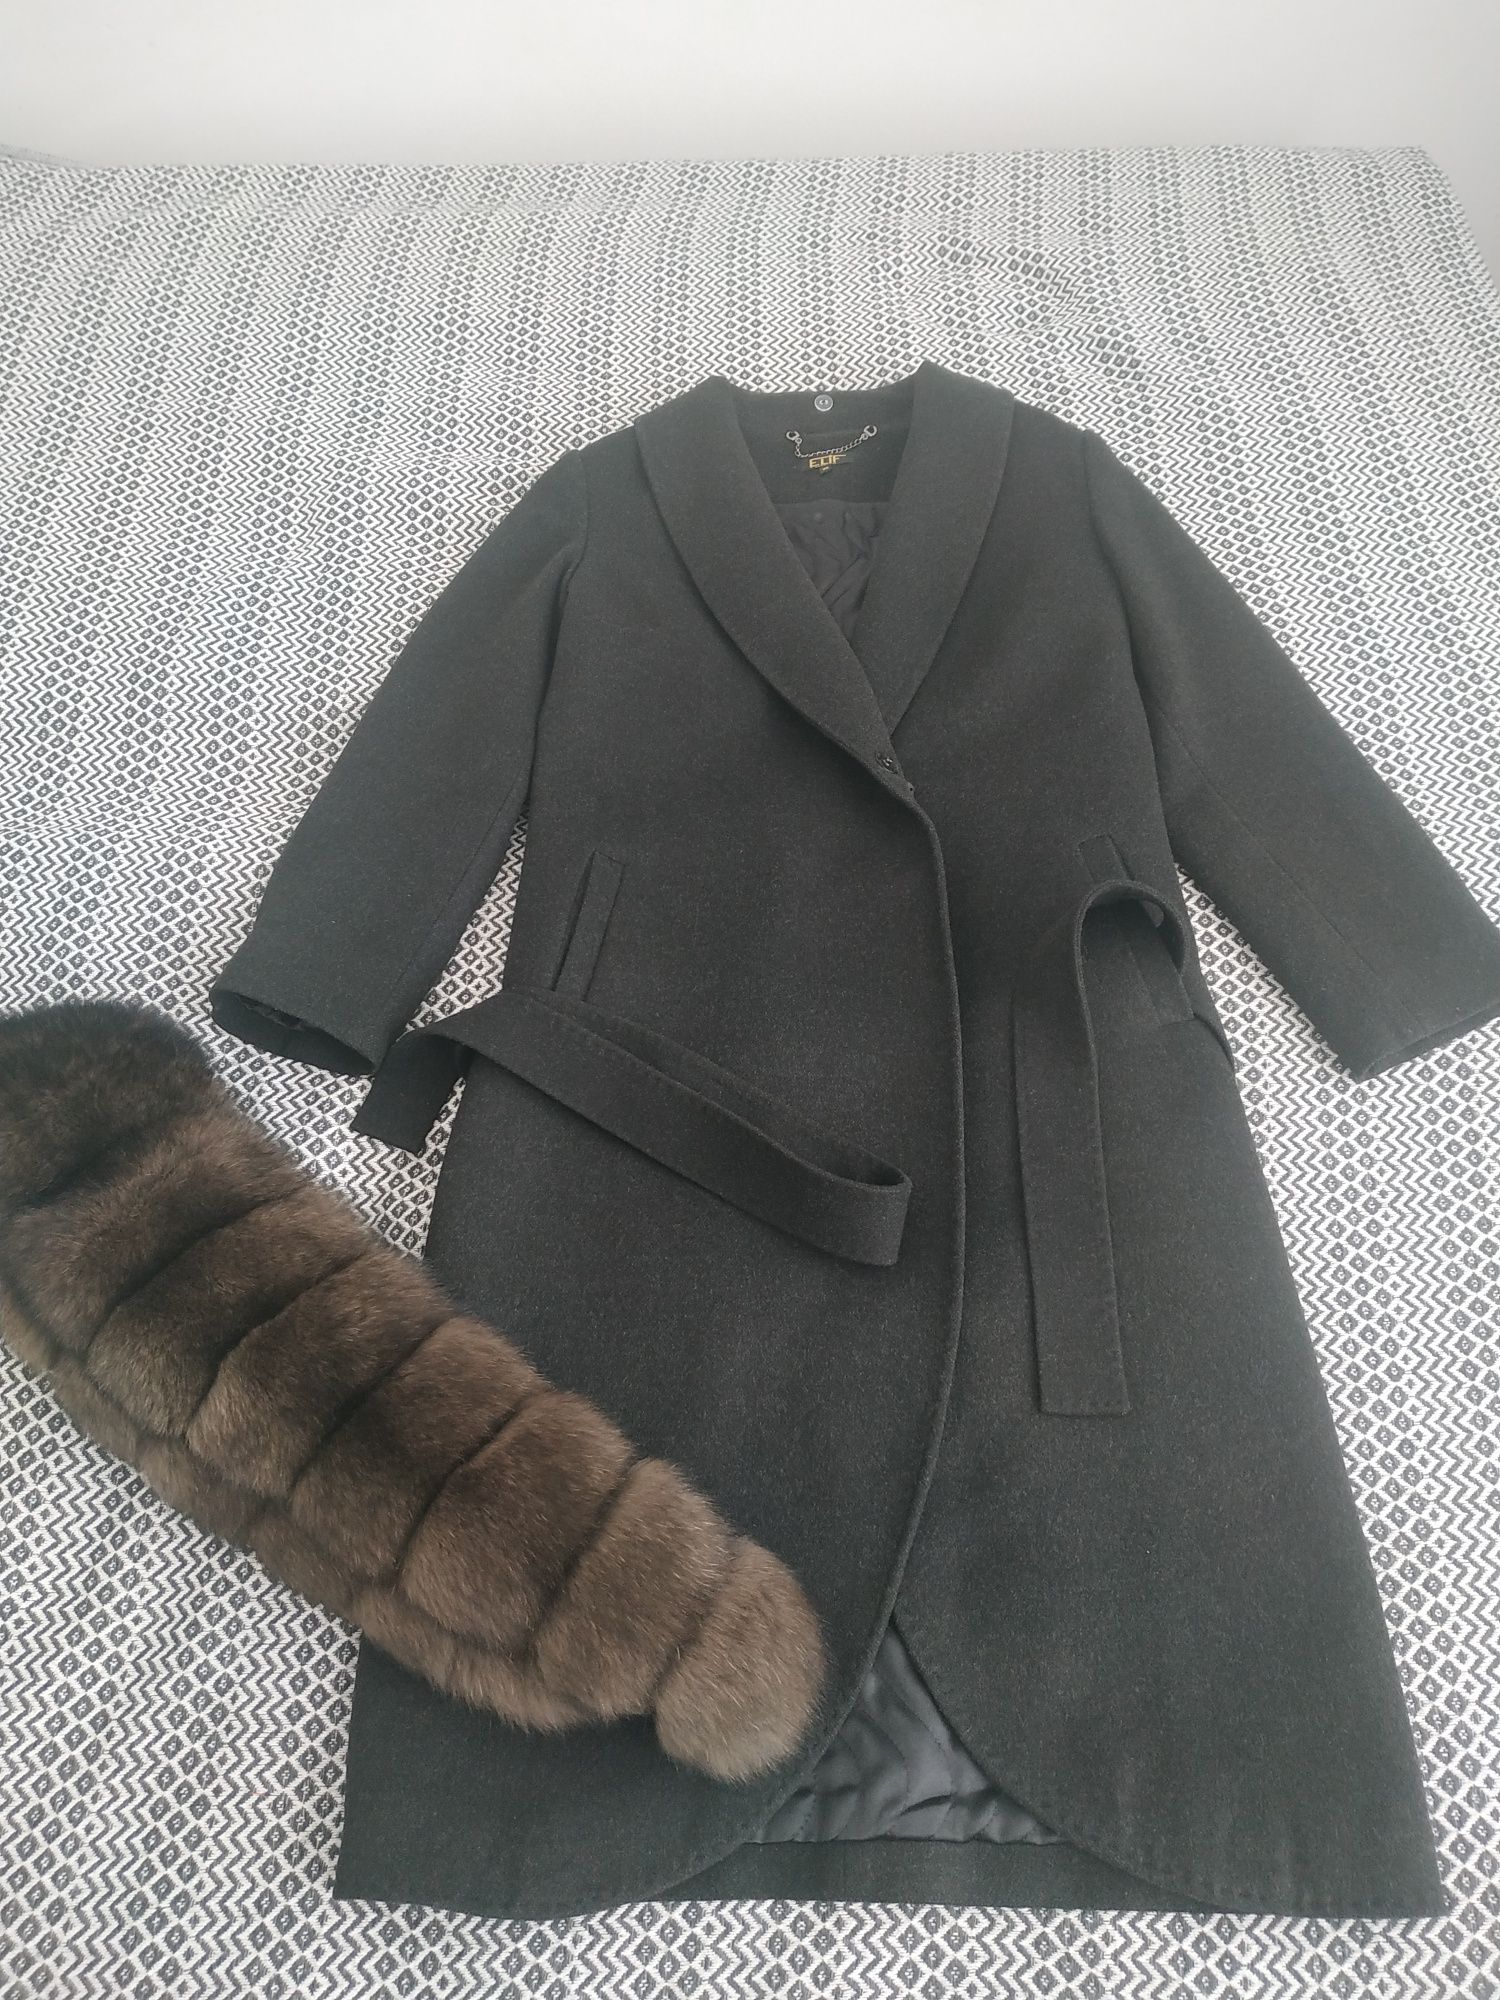 Пальто с натуральным мехом, производство Турция